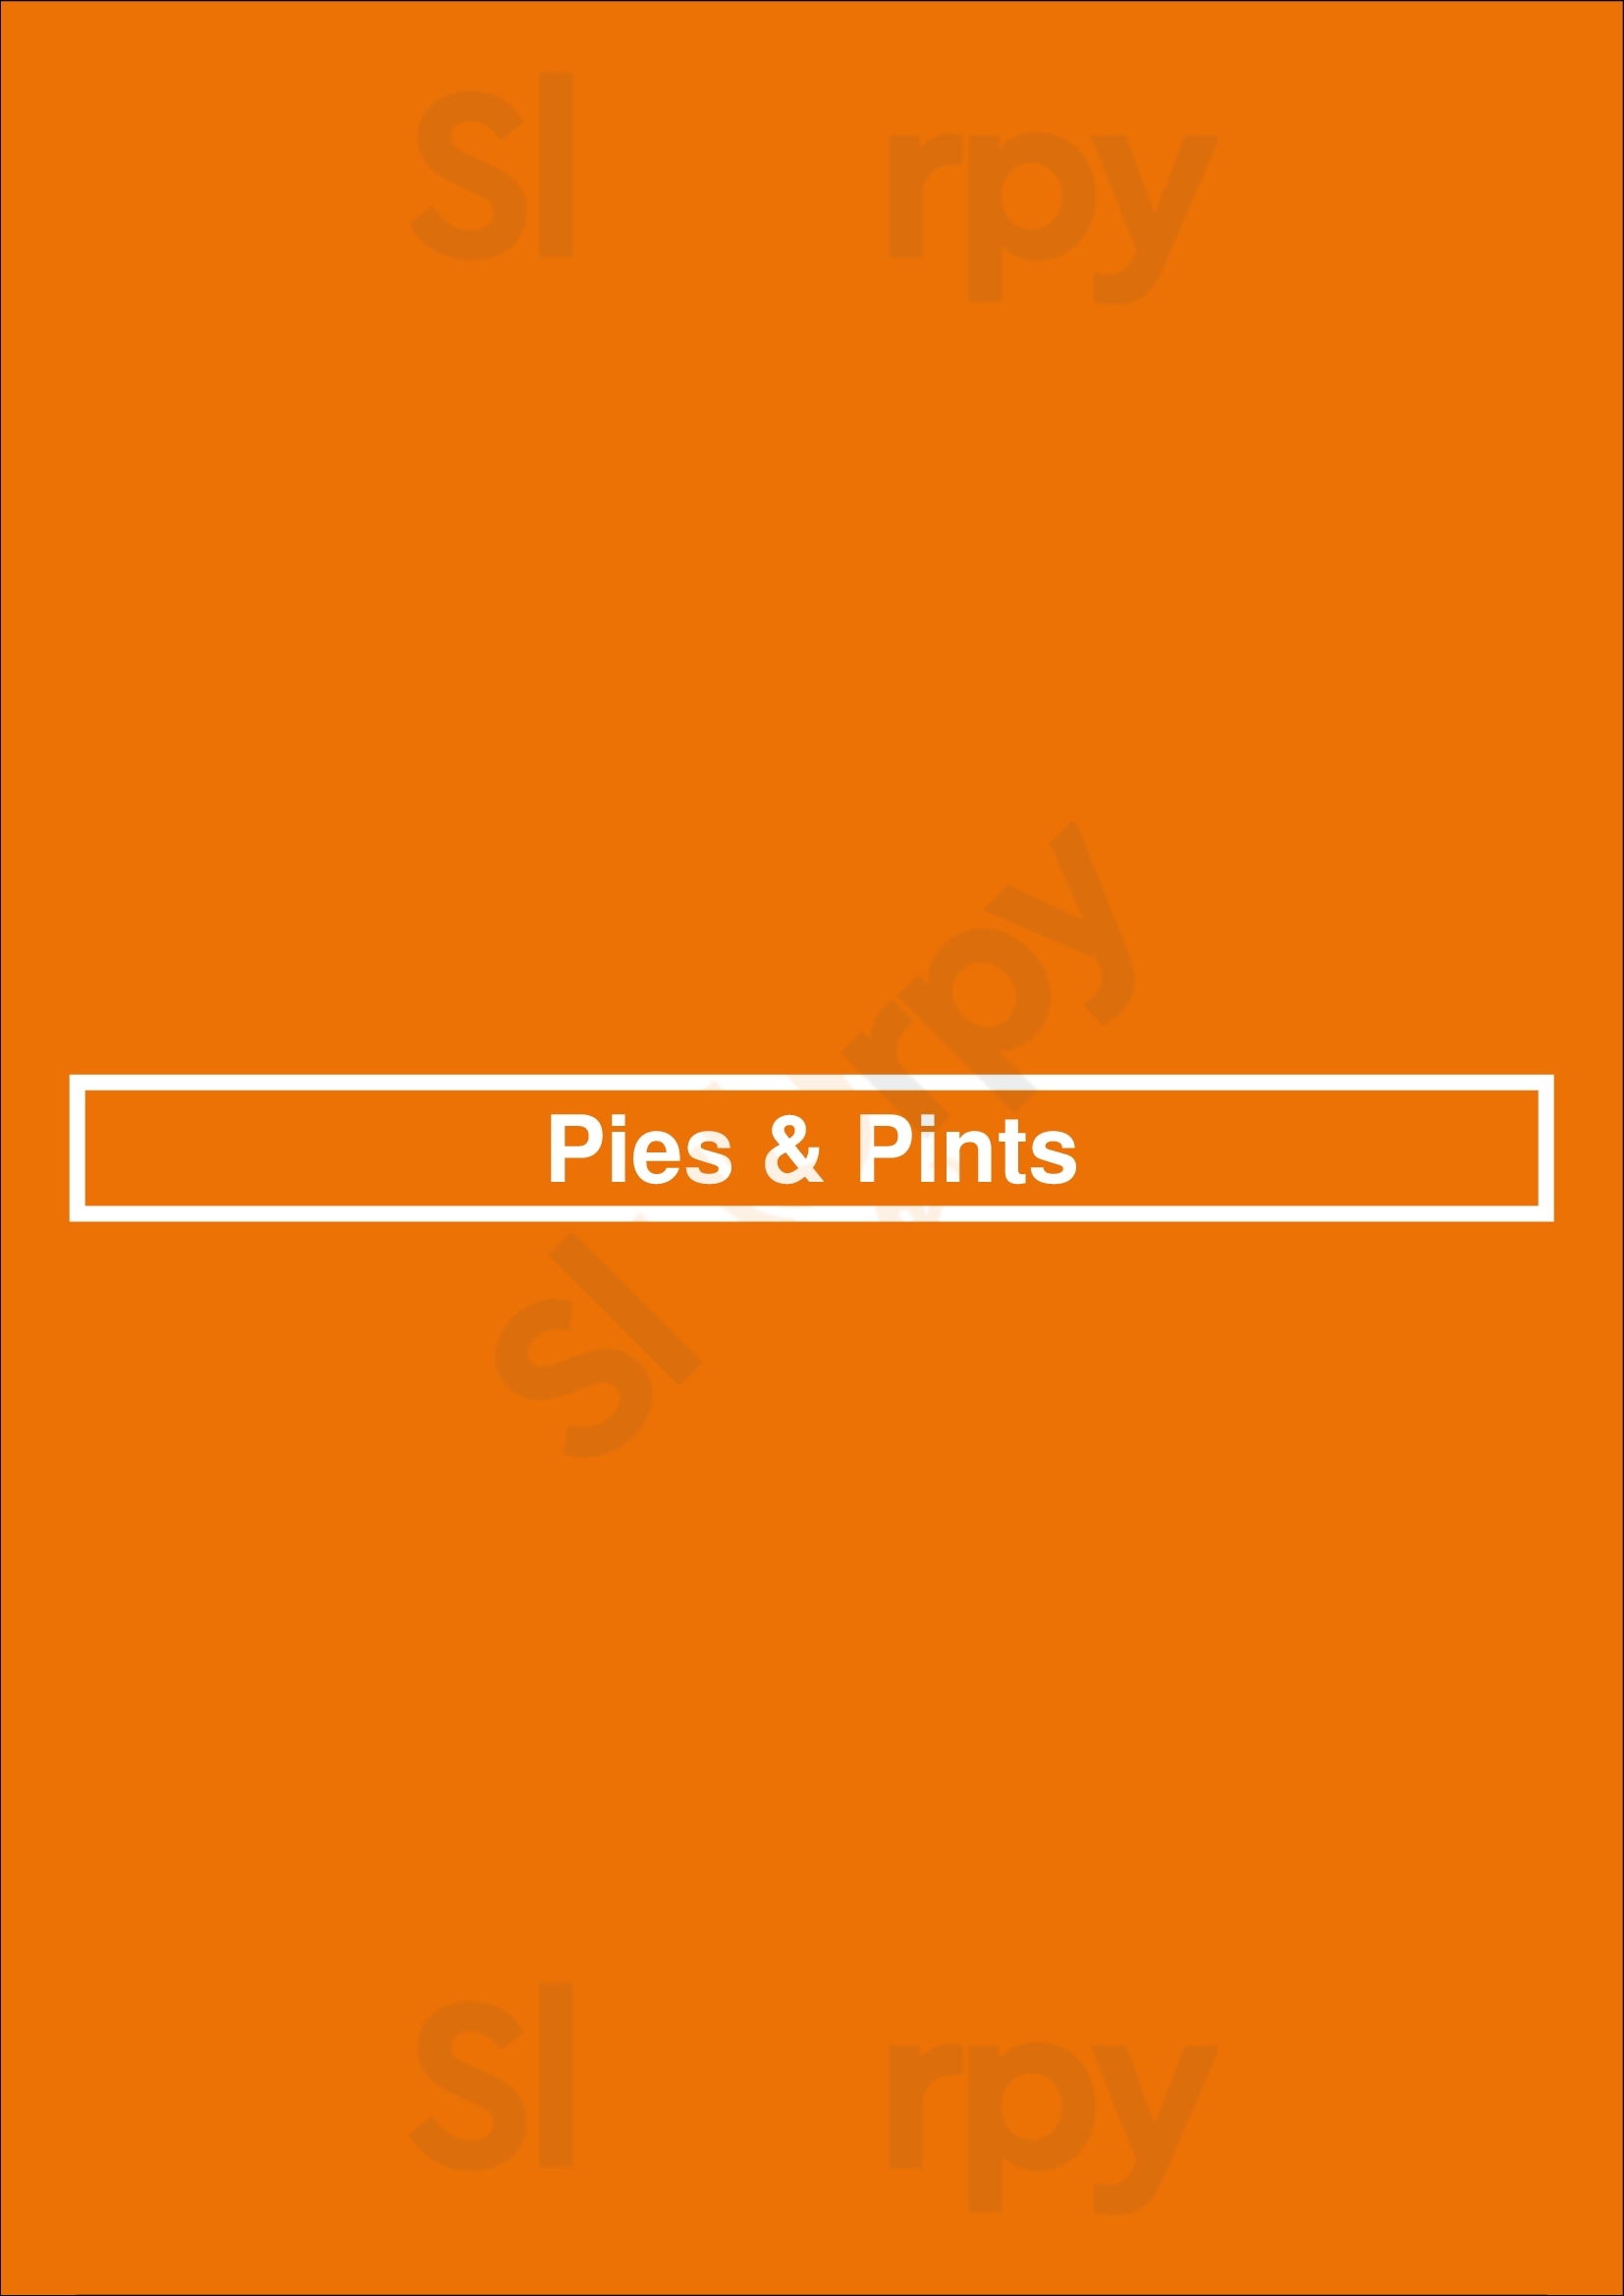 Pies & Pints Birmingham Menu - 1